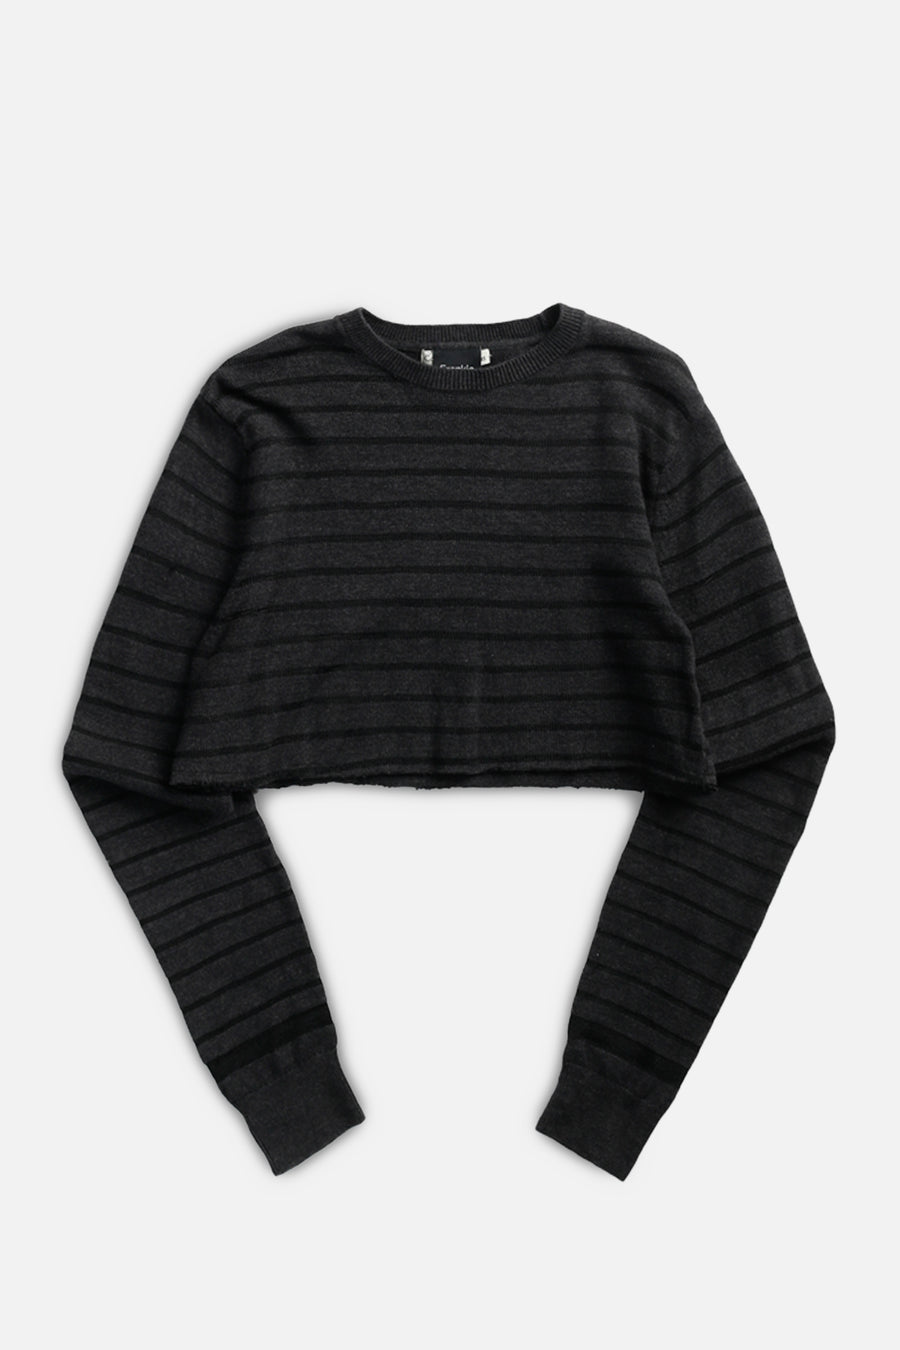 Rework Crop Knit Sweater - S